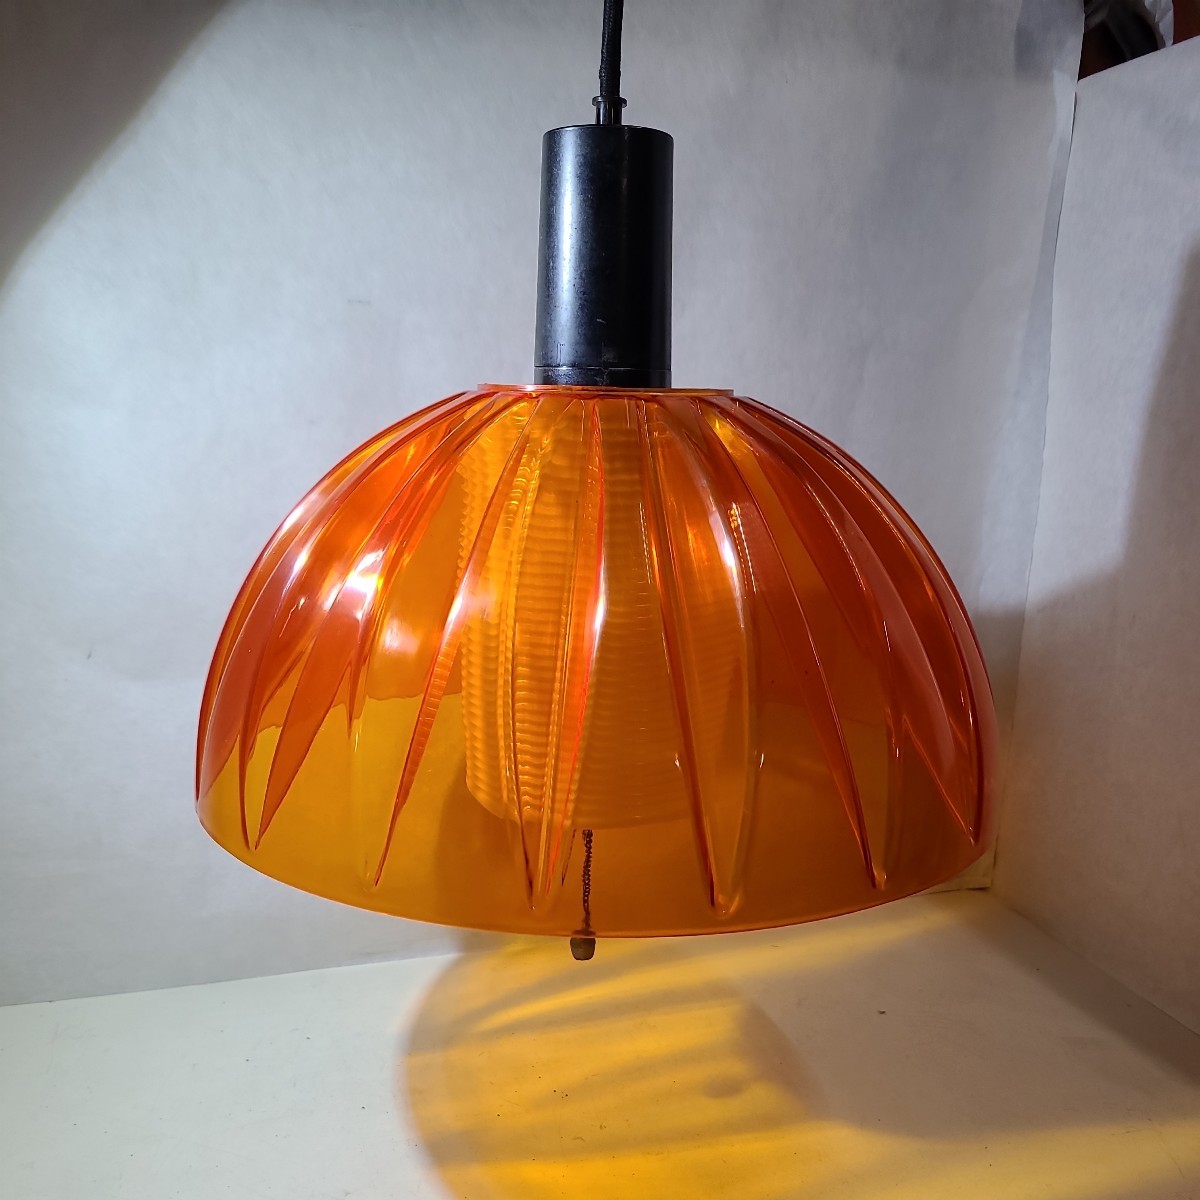 昭和レトロ 電傘 乳白色 ナショナル 照明器具 ランプシェード オレンジ